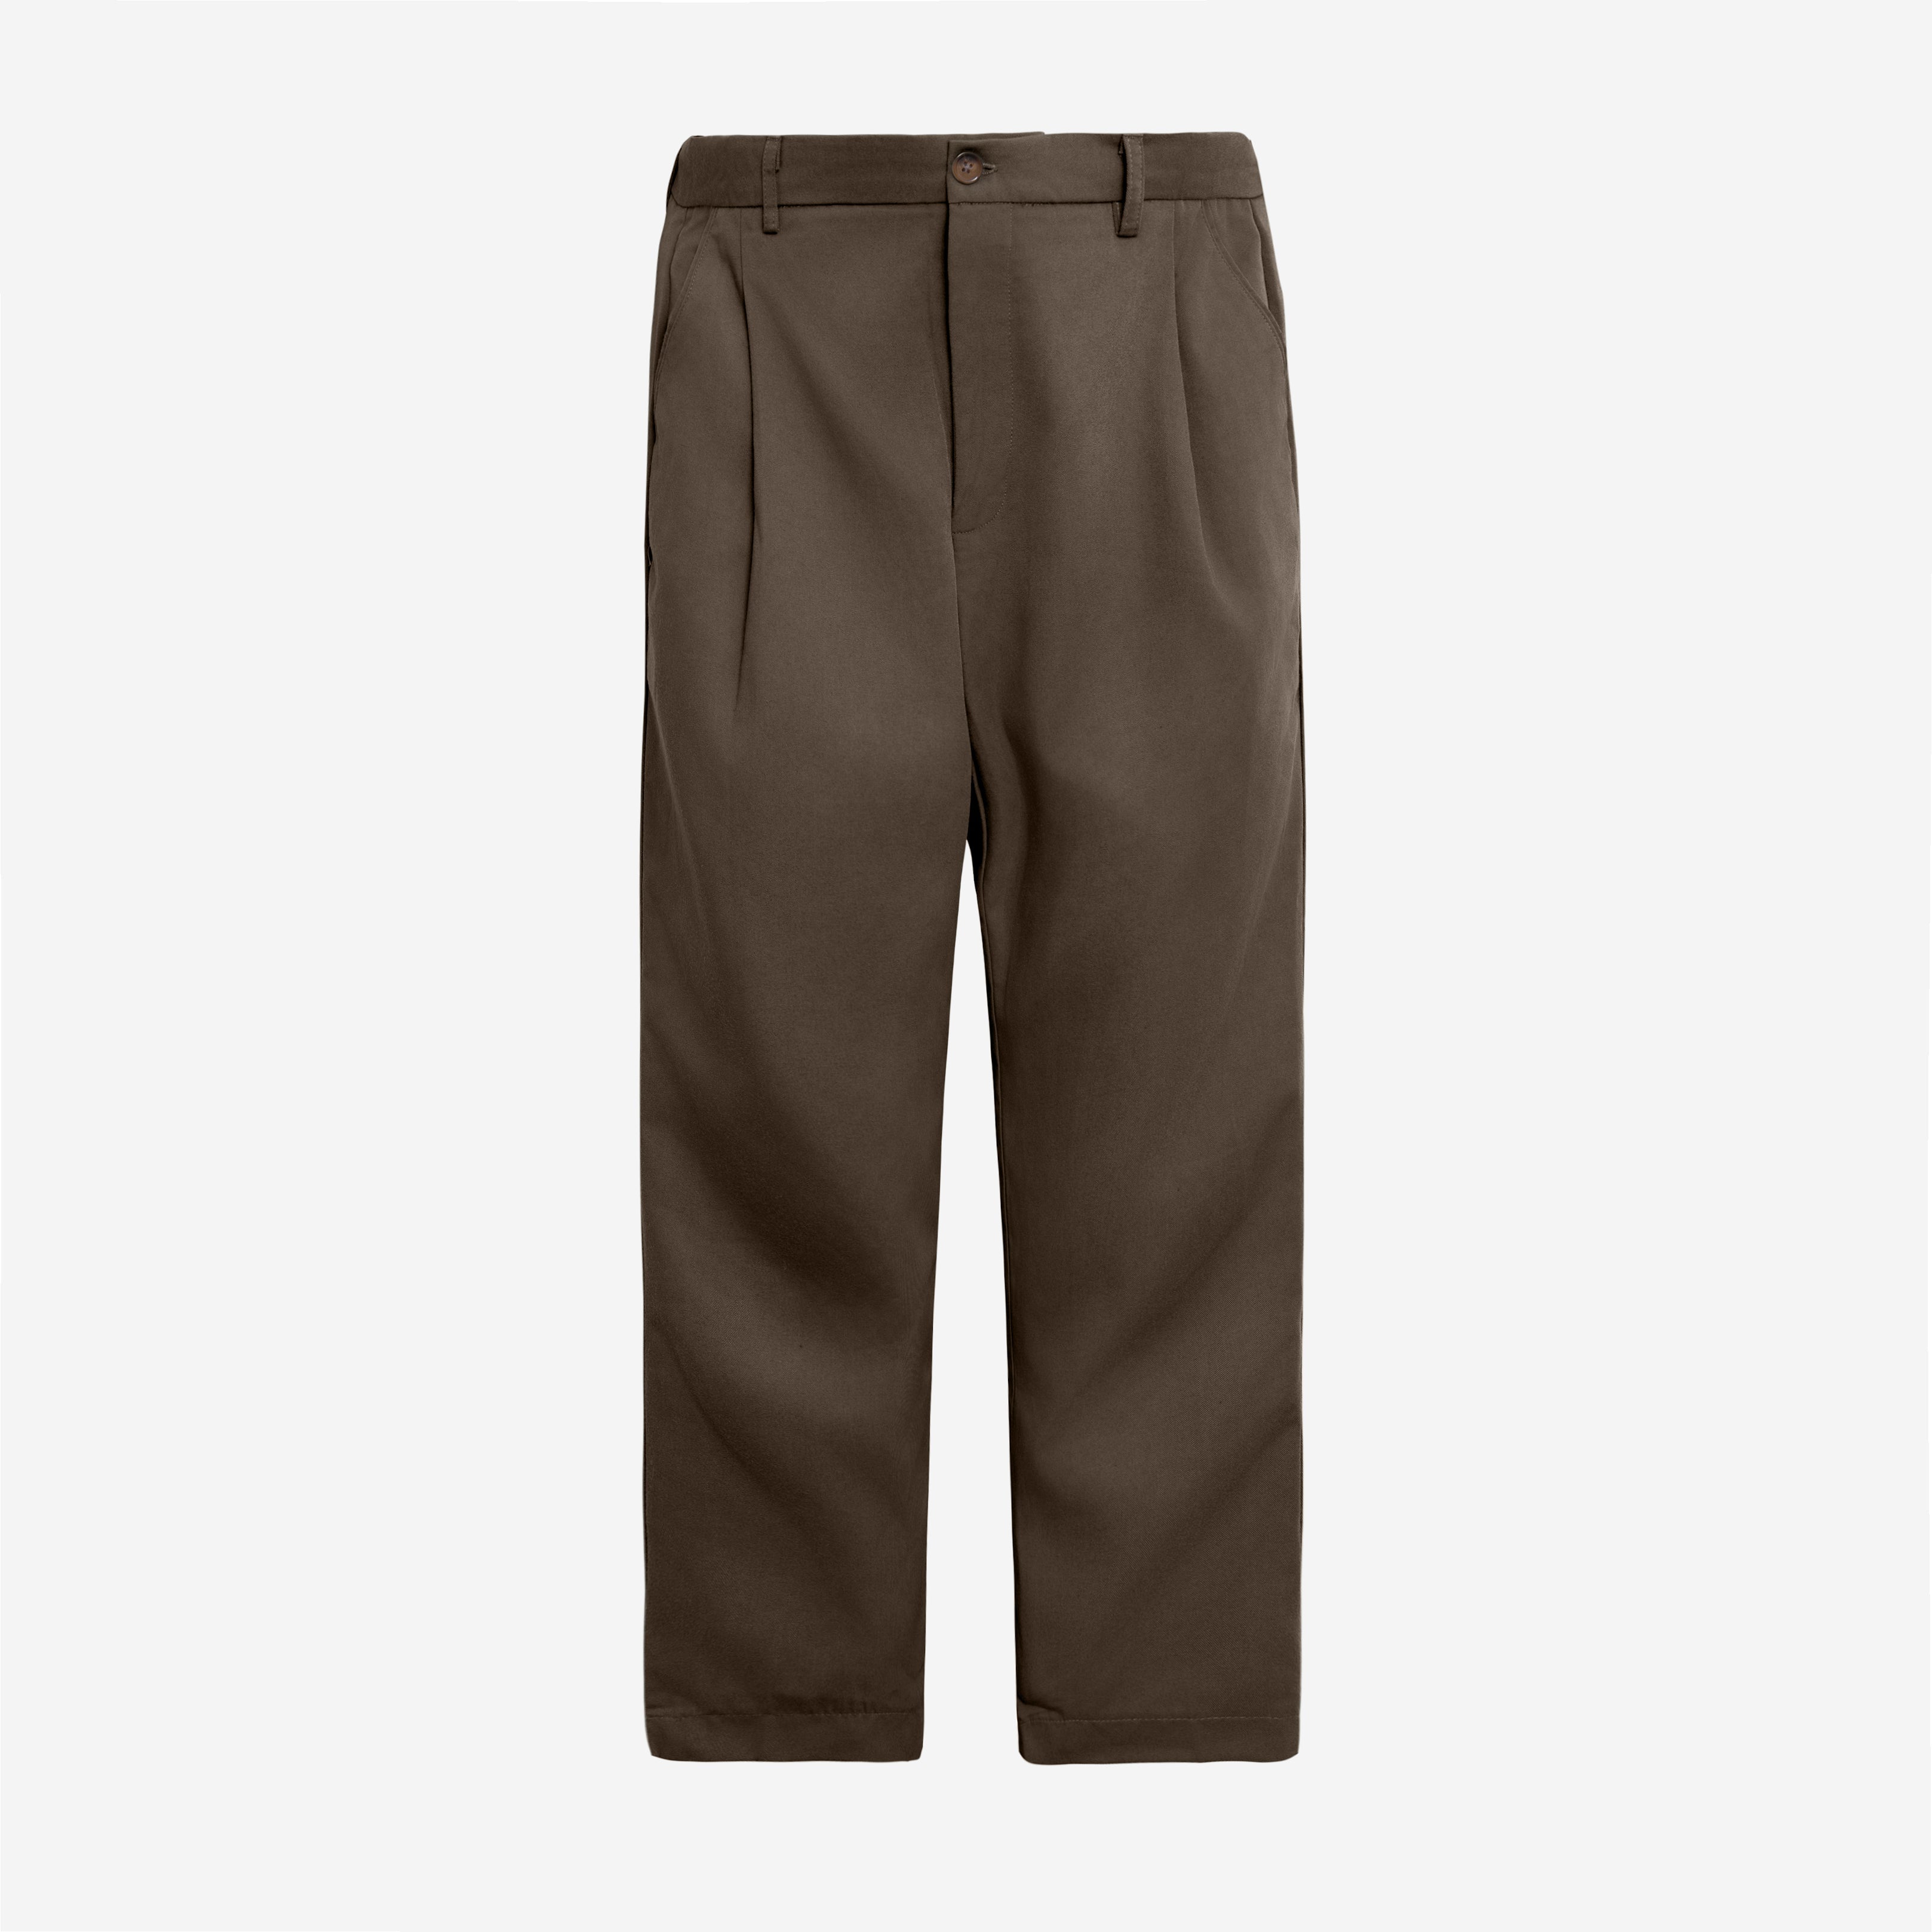 FACTORY SALE - Sabh Pleated Pants - Brown